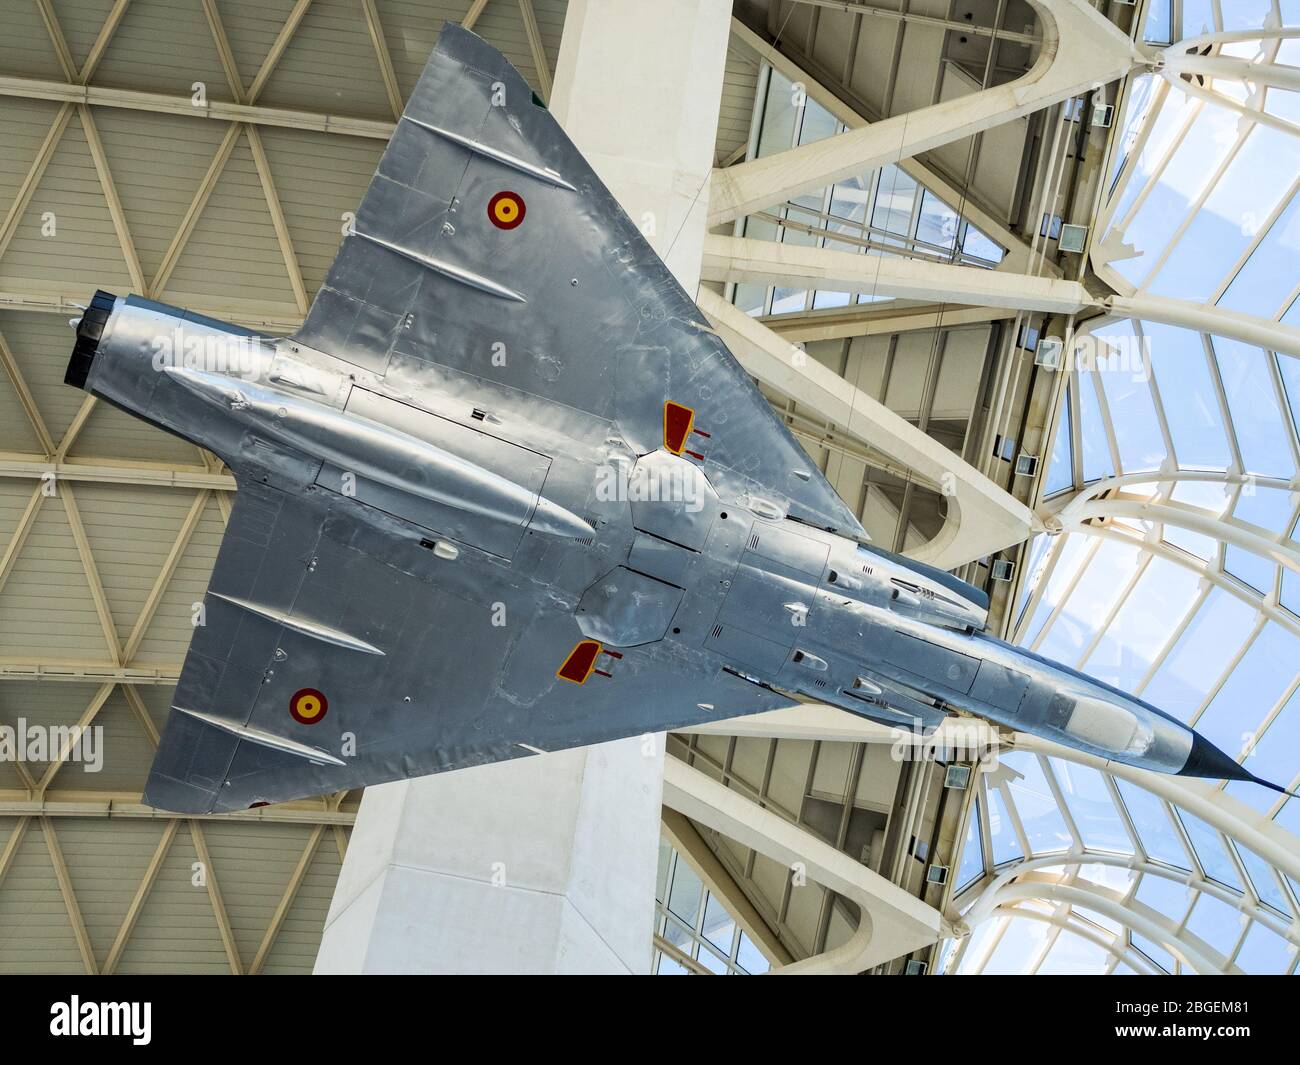 Exposition au jet de l'Aviation espagnole Dassault Mirage III EE au Musée des Arts et des Sciences de Valence ou au Musée scientifique Príncipe Felipe de Valence. Banque D'Images